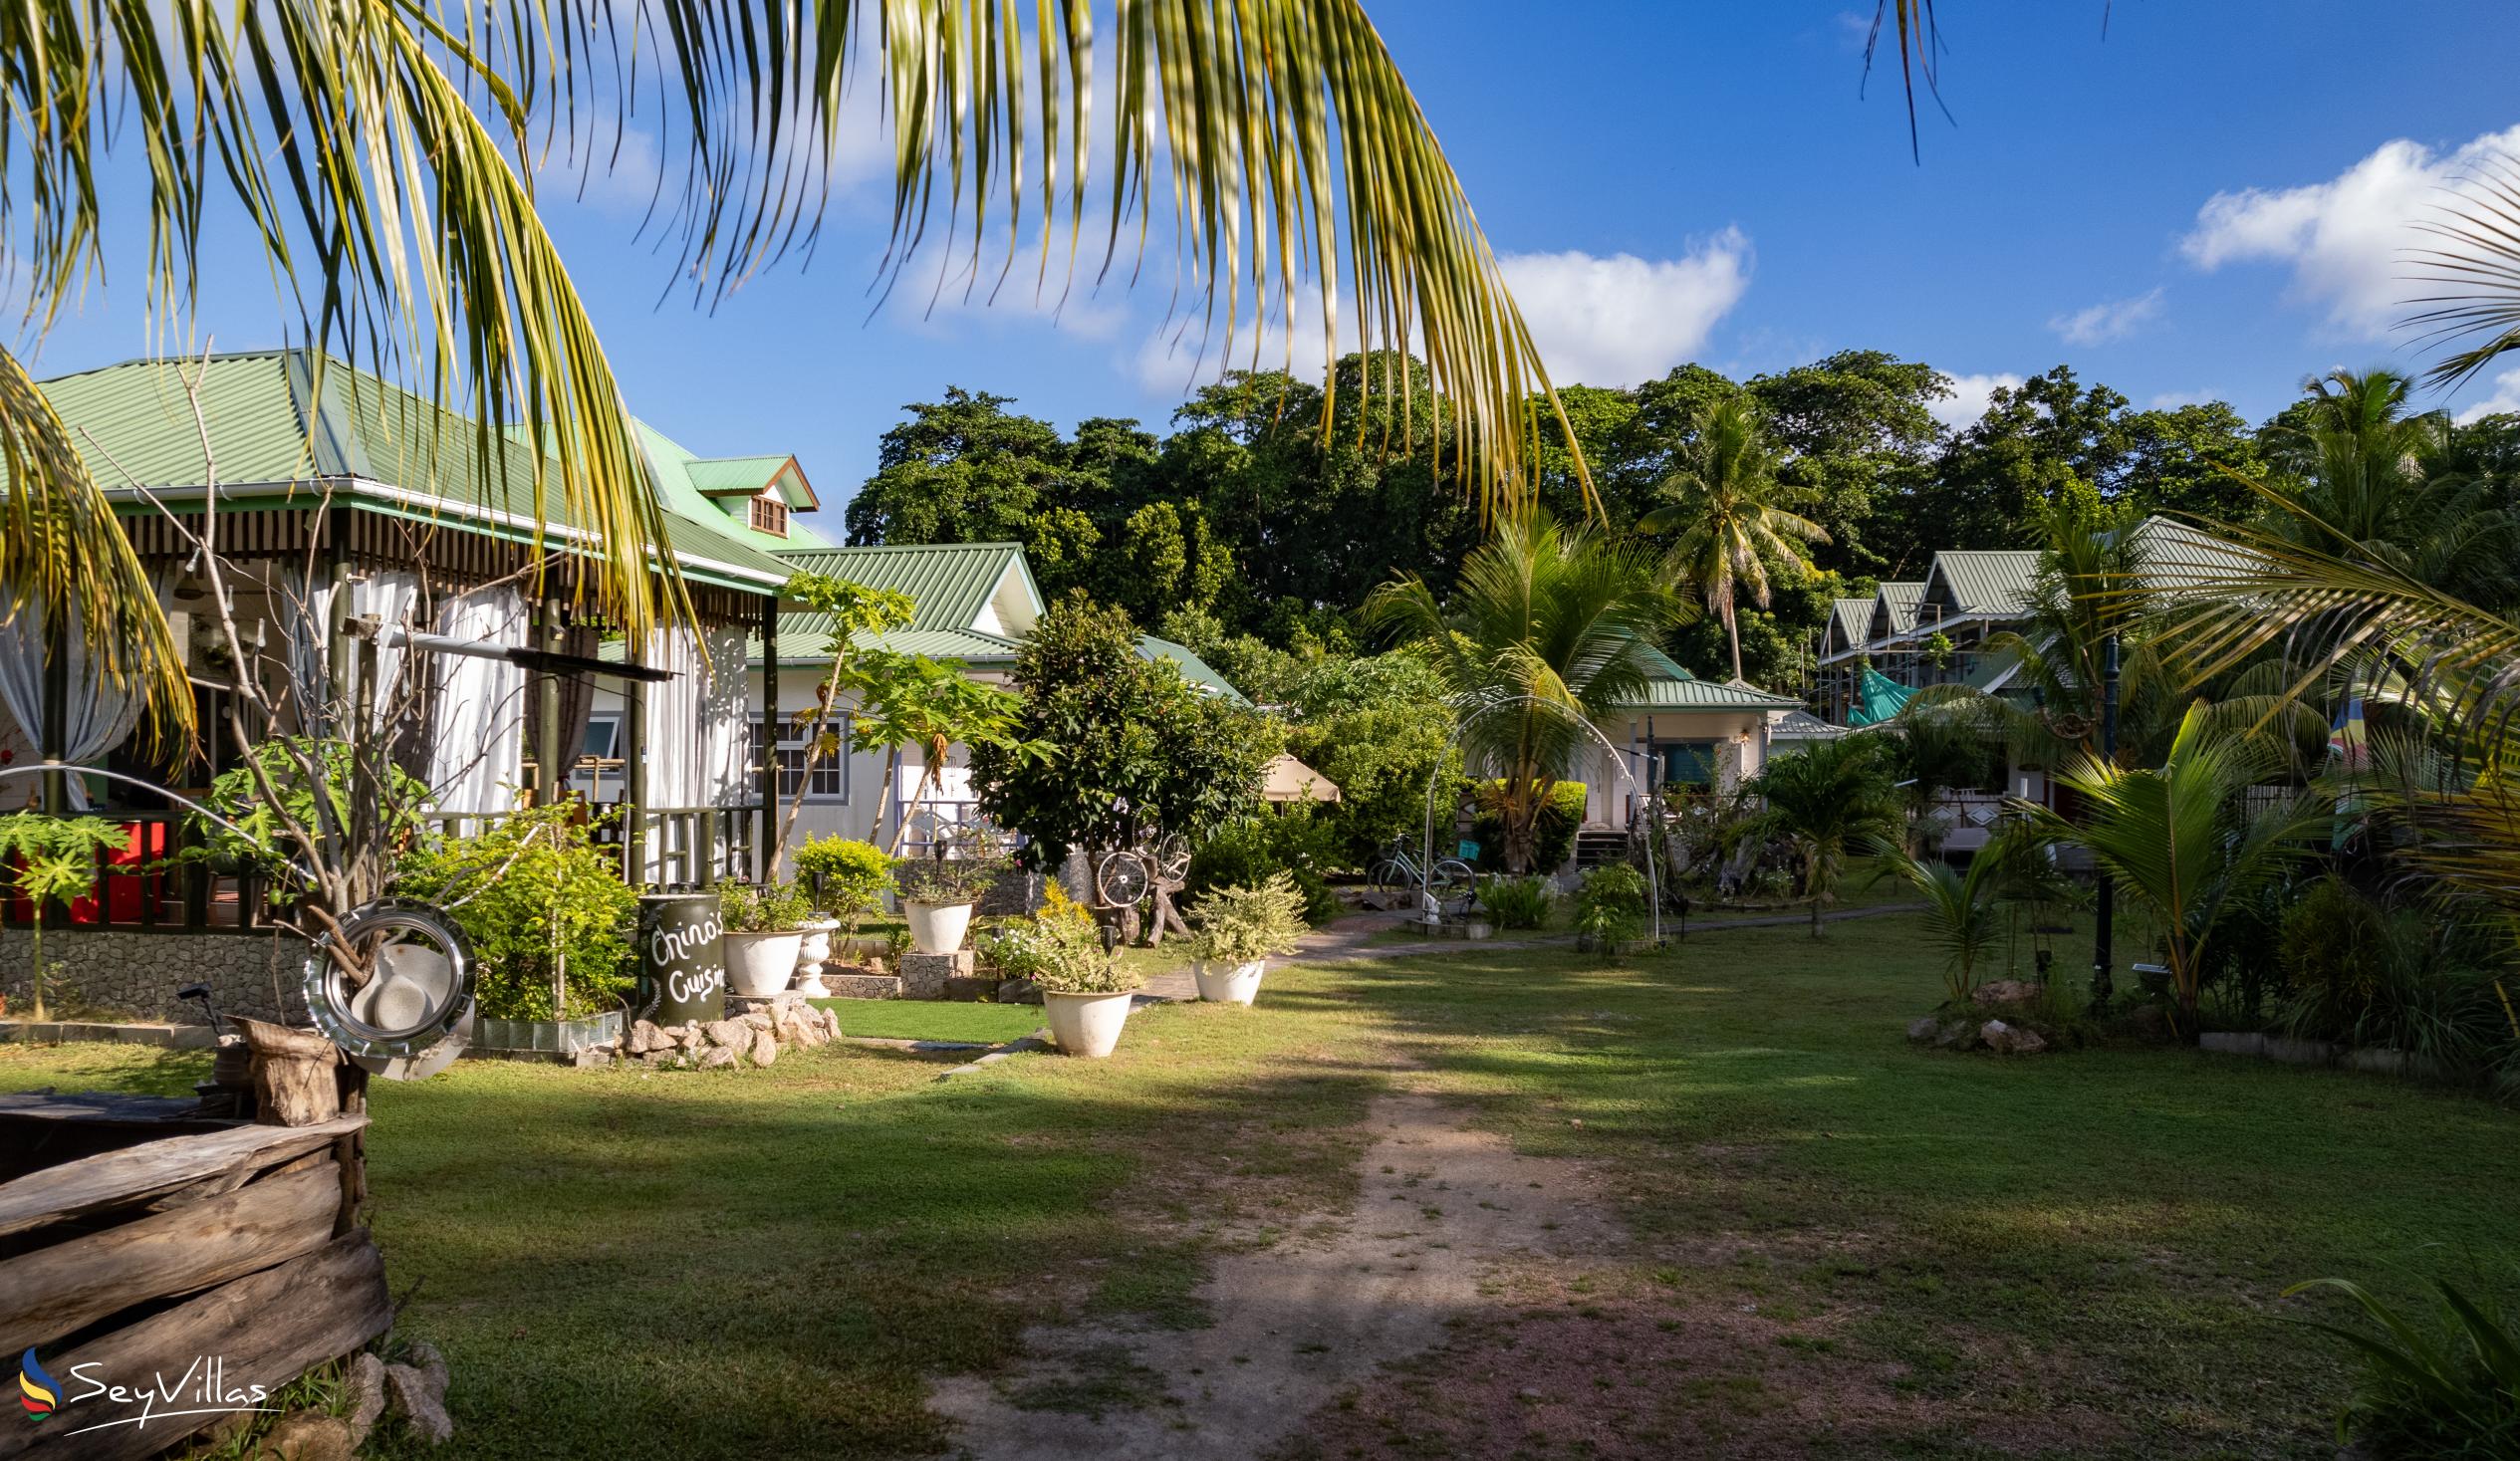 Photo 7: Agnes Cottage - Outdoor area - La Digue (Seychelles)